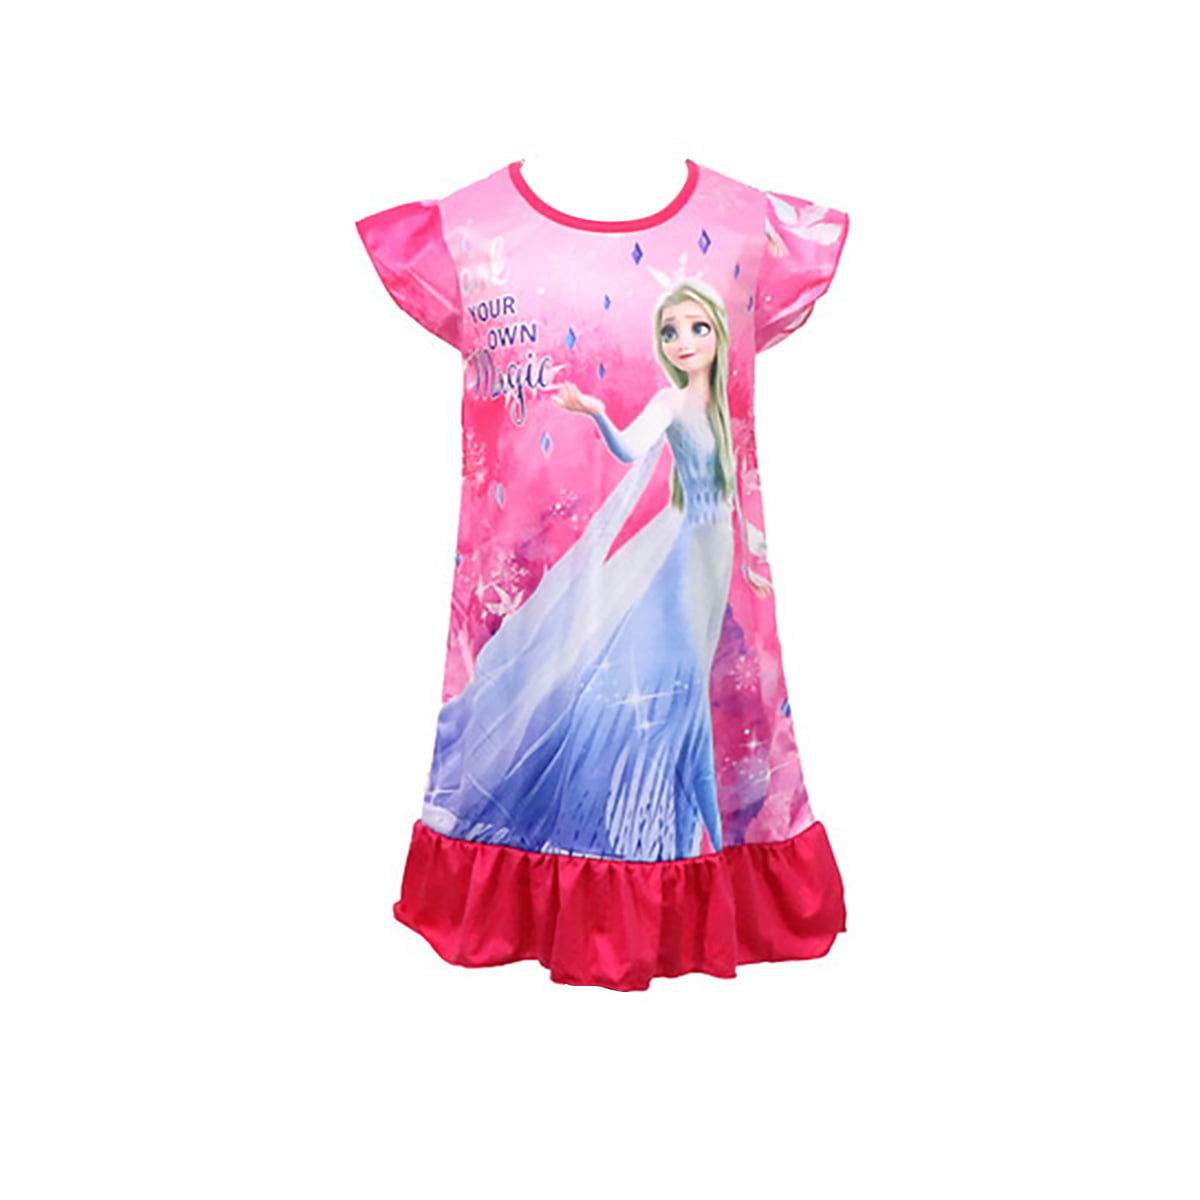 Princess Dress for Toddler Girls Cartoon Print Casual Dress